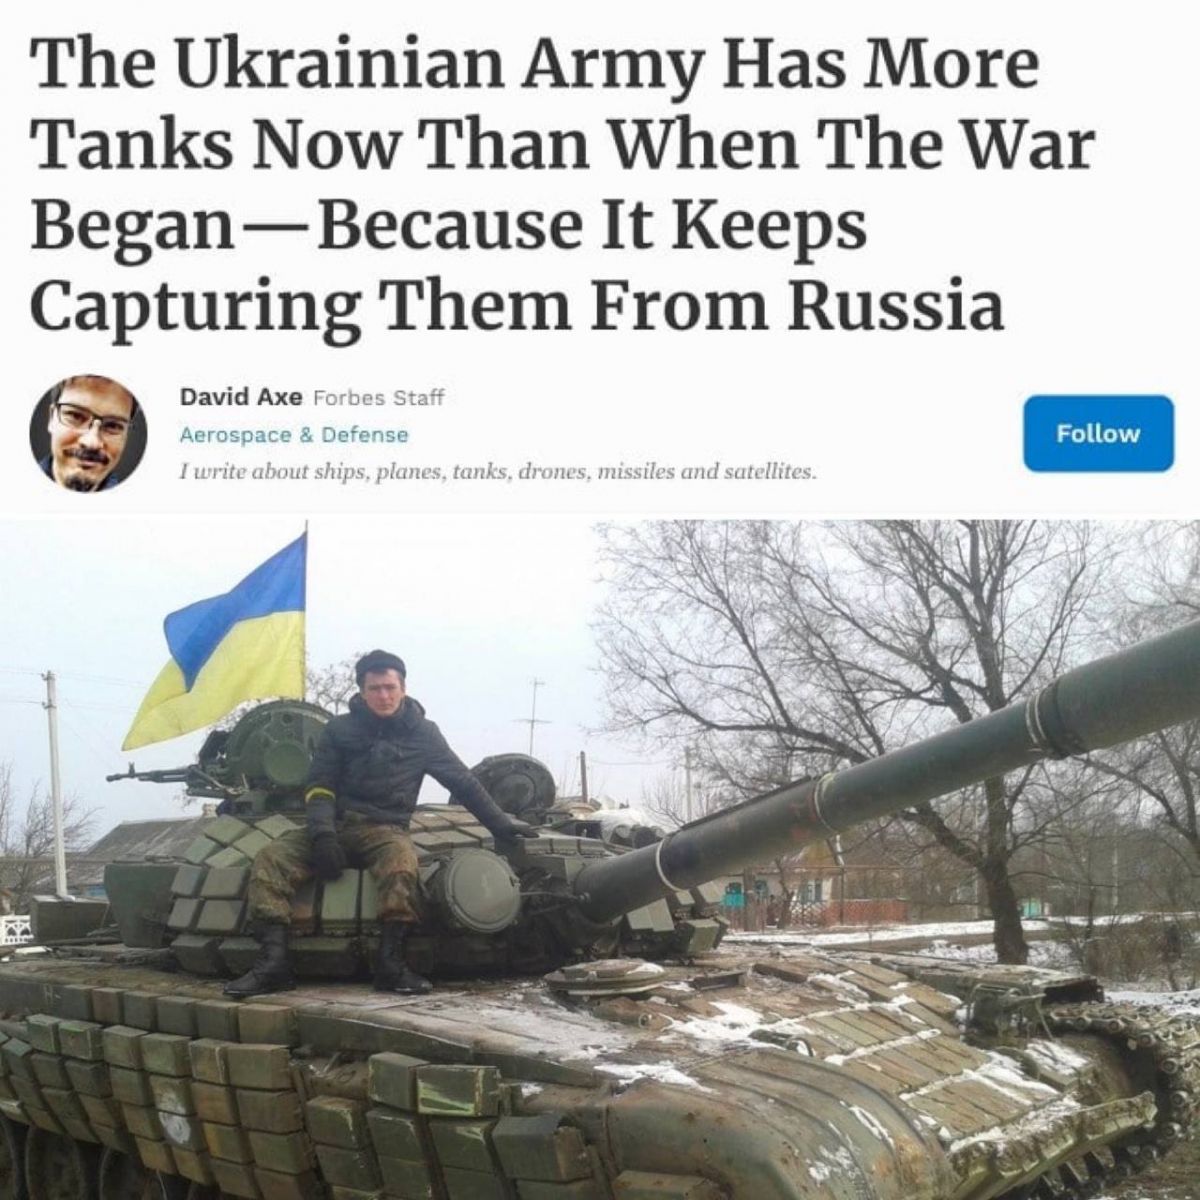 Аналітики Forbes порахували, що з початку фашистського вторгнення росіян в Україну армія рф втратила 530 танків, тоді як ЗСУ - 74 одиниці. При цьому ЗСУ все одно залишилися у плюсі, оскільки захопили 117 трофейних танків ворога